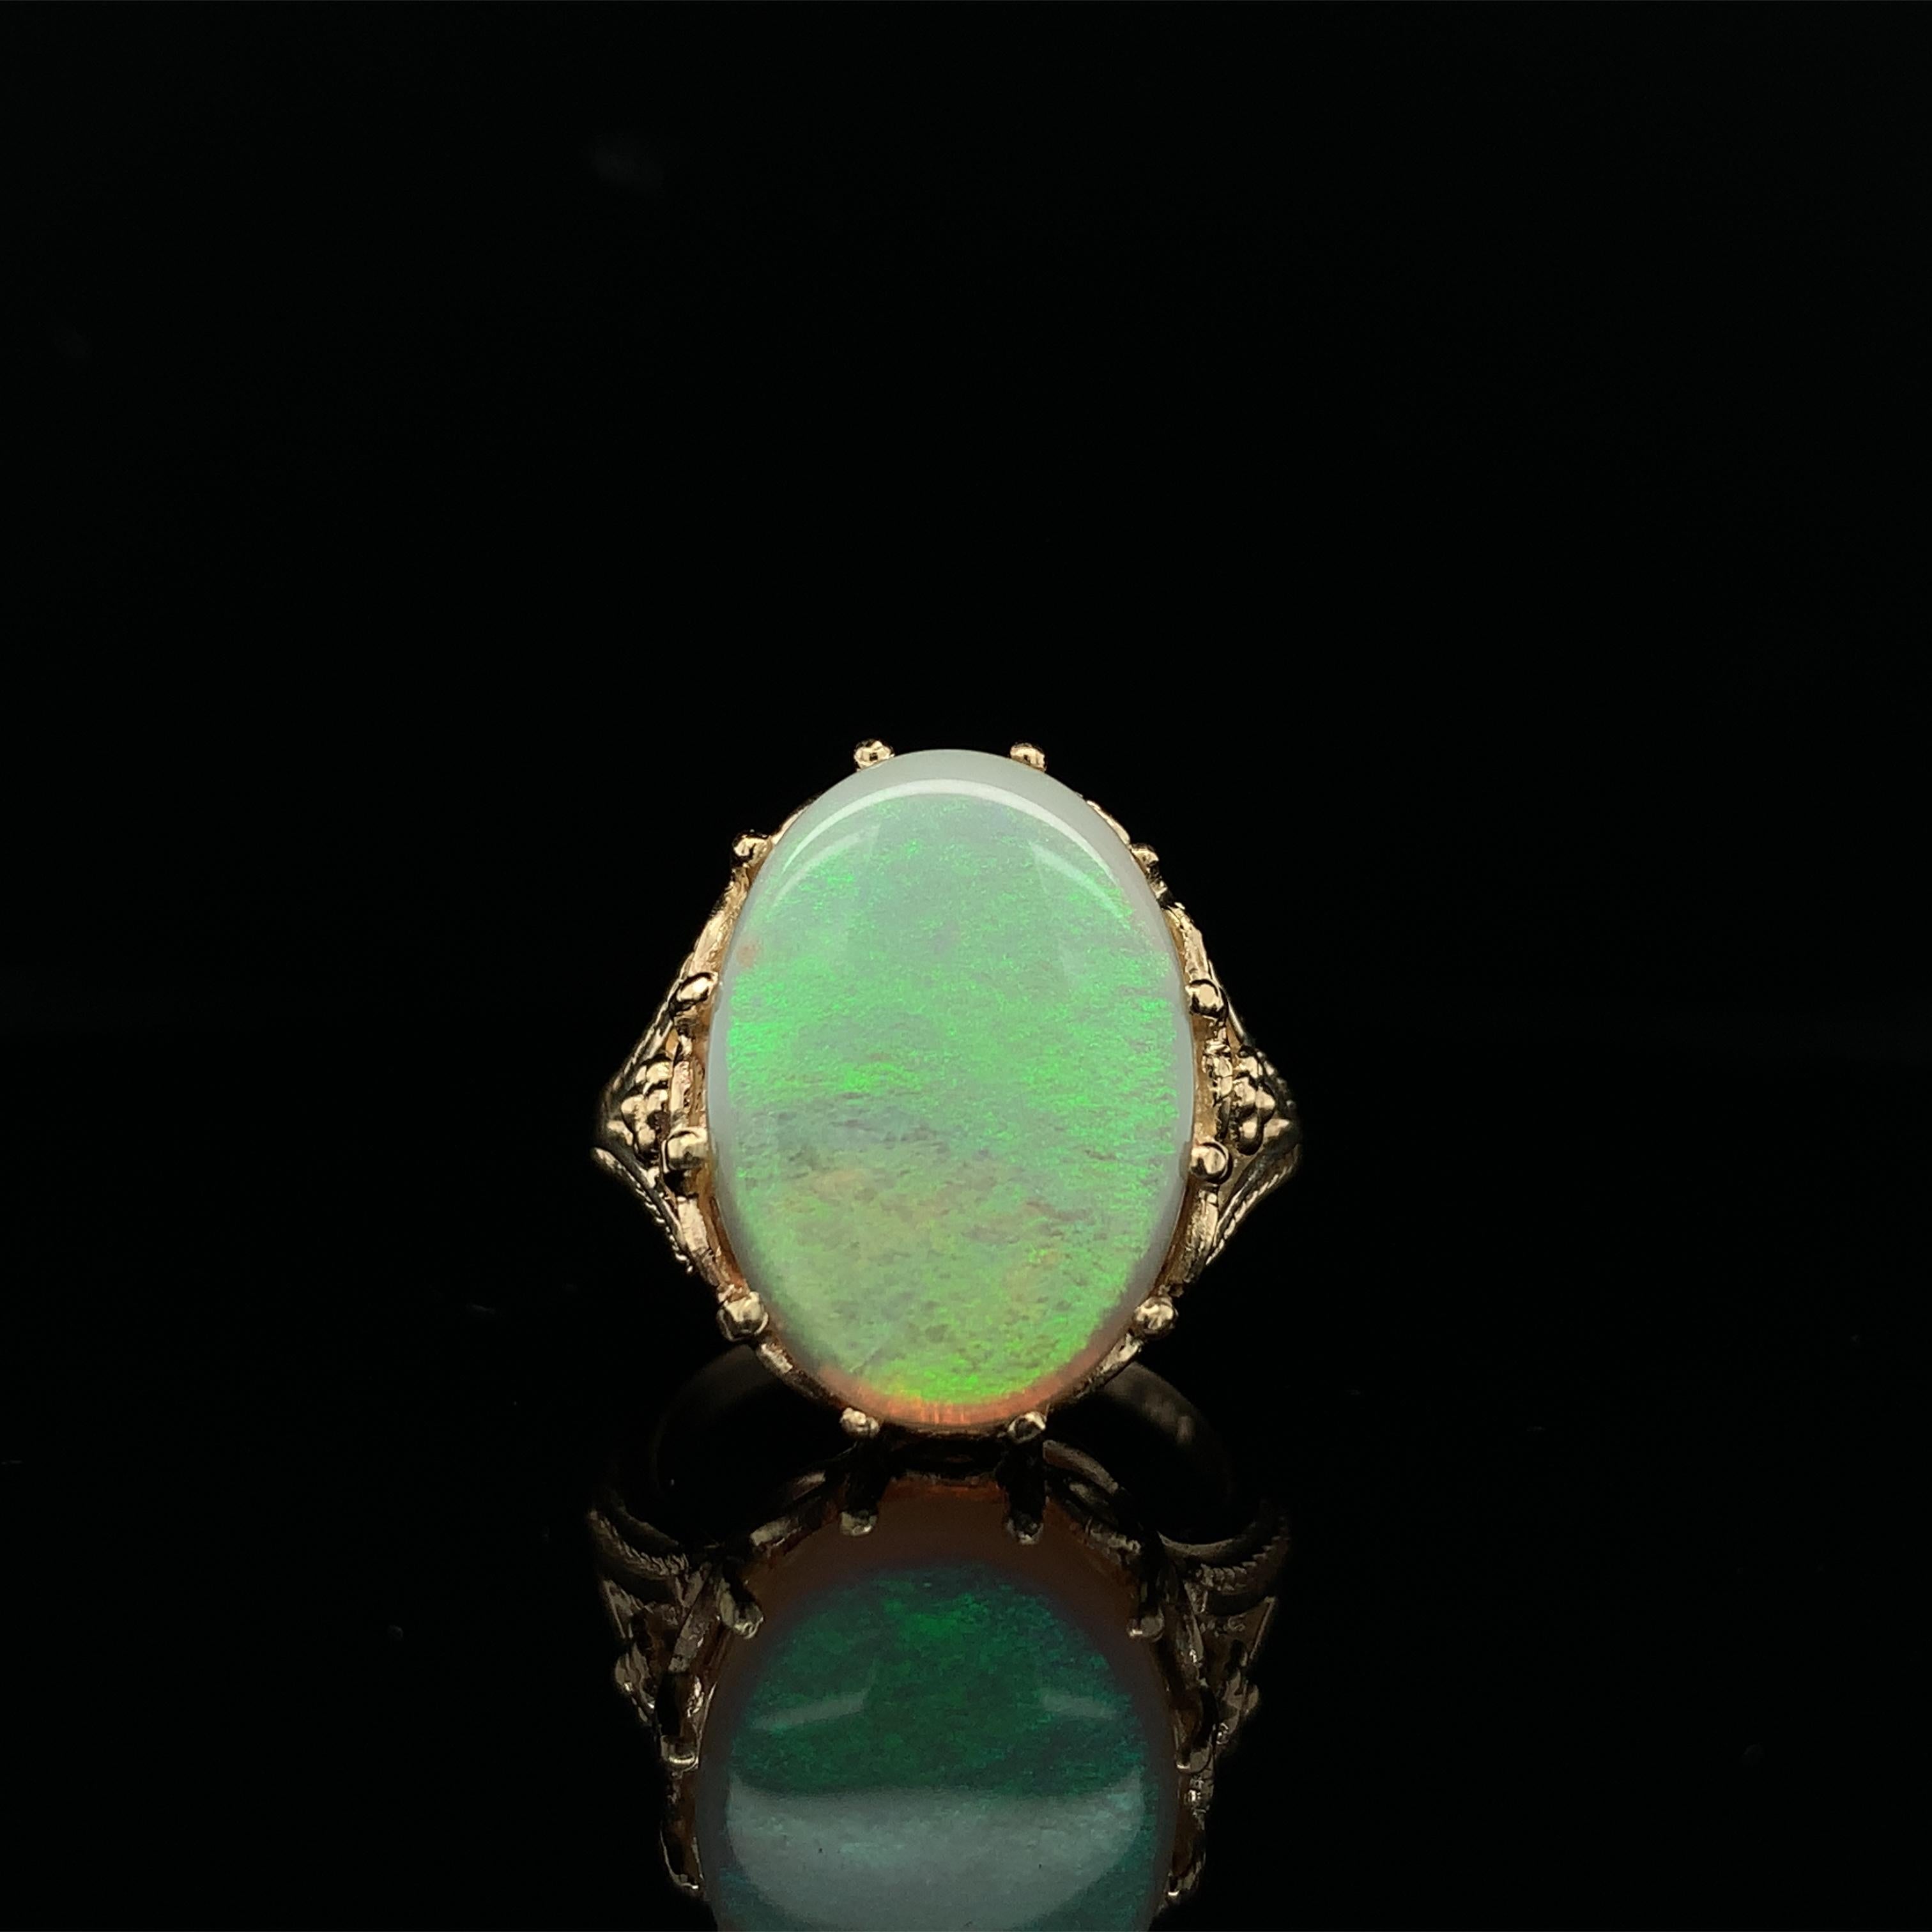 Bague en or jaune 14K ornée d'une opale australienne ovale pesant 5,86 carats et mesurant environ 18 mm x 12,8 mm. L'opale présente un jeu de couleurs principalement vertes avec un peu de jaune. Cette opale est fraîchement polie et a beaucoup de